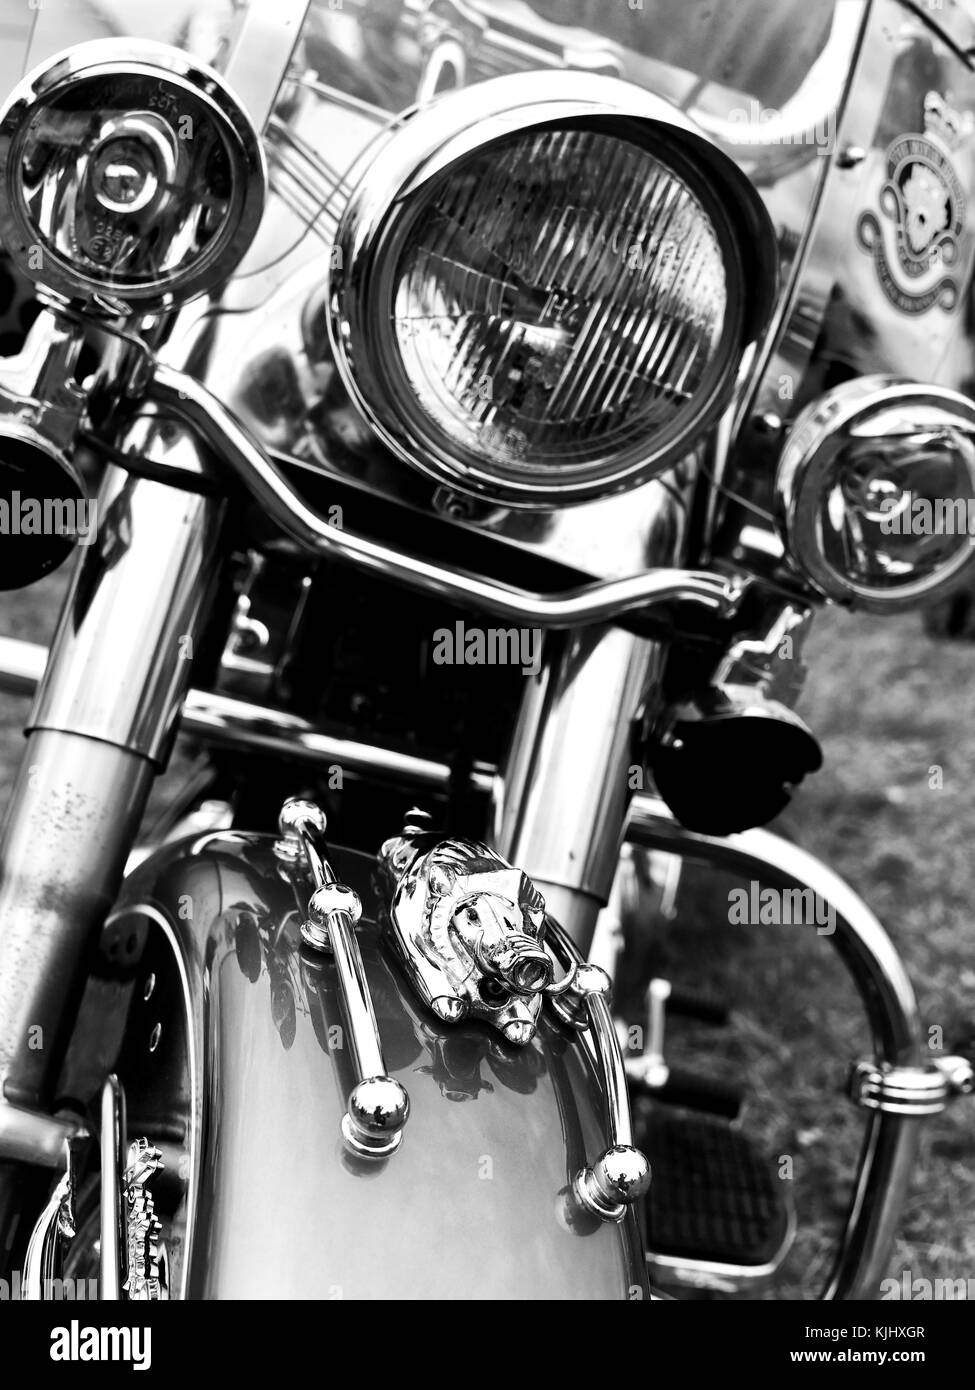 Motocicletta monocromatica B&W Harley Davidson grande con una grande mascotte cromata Hog sul paraurti Foto Stock